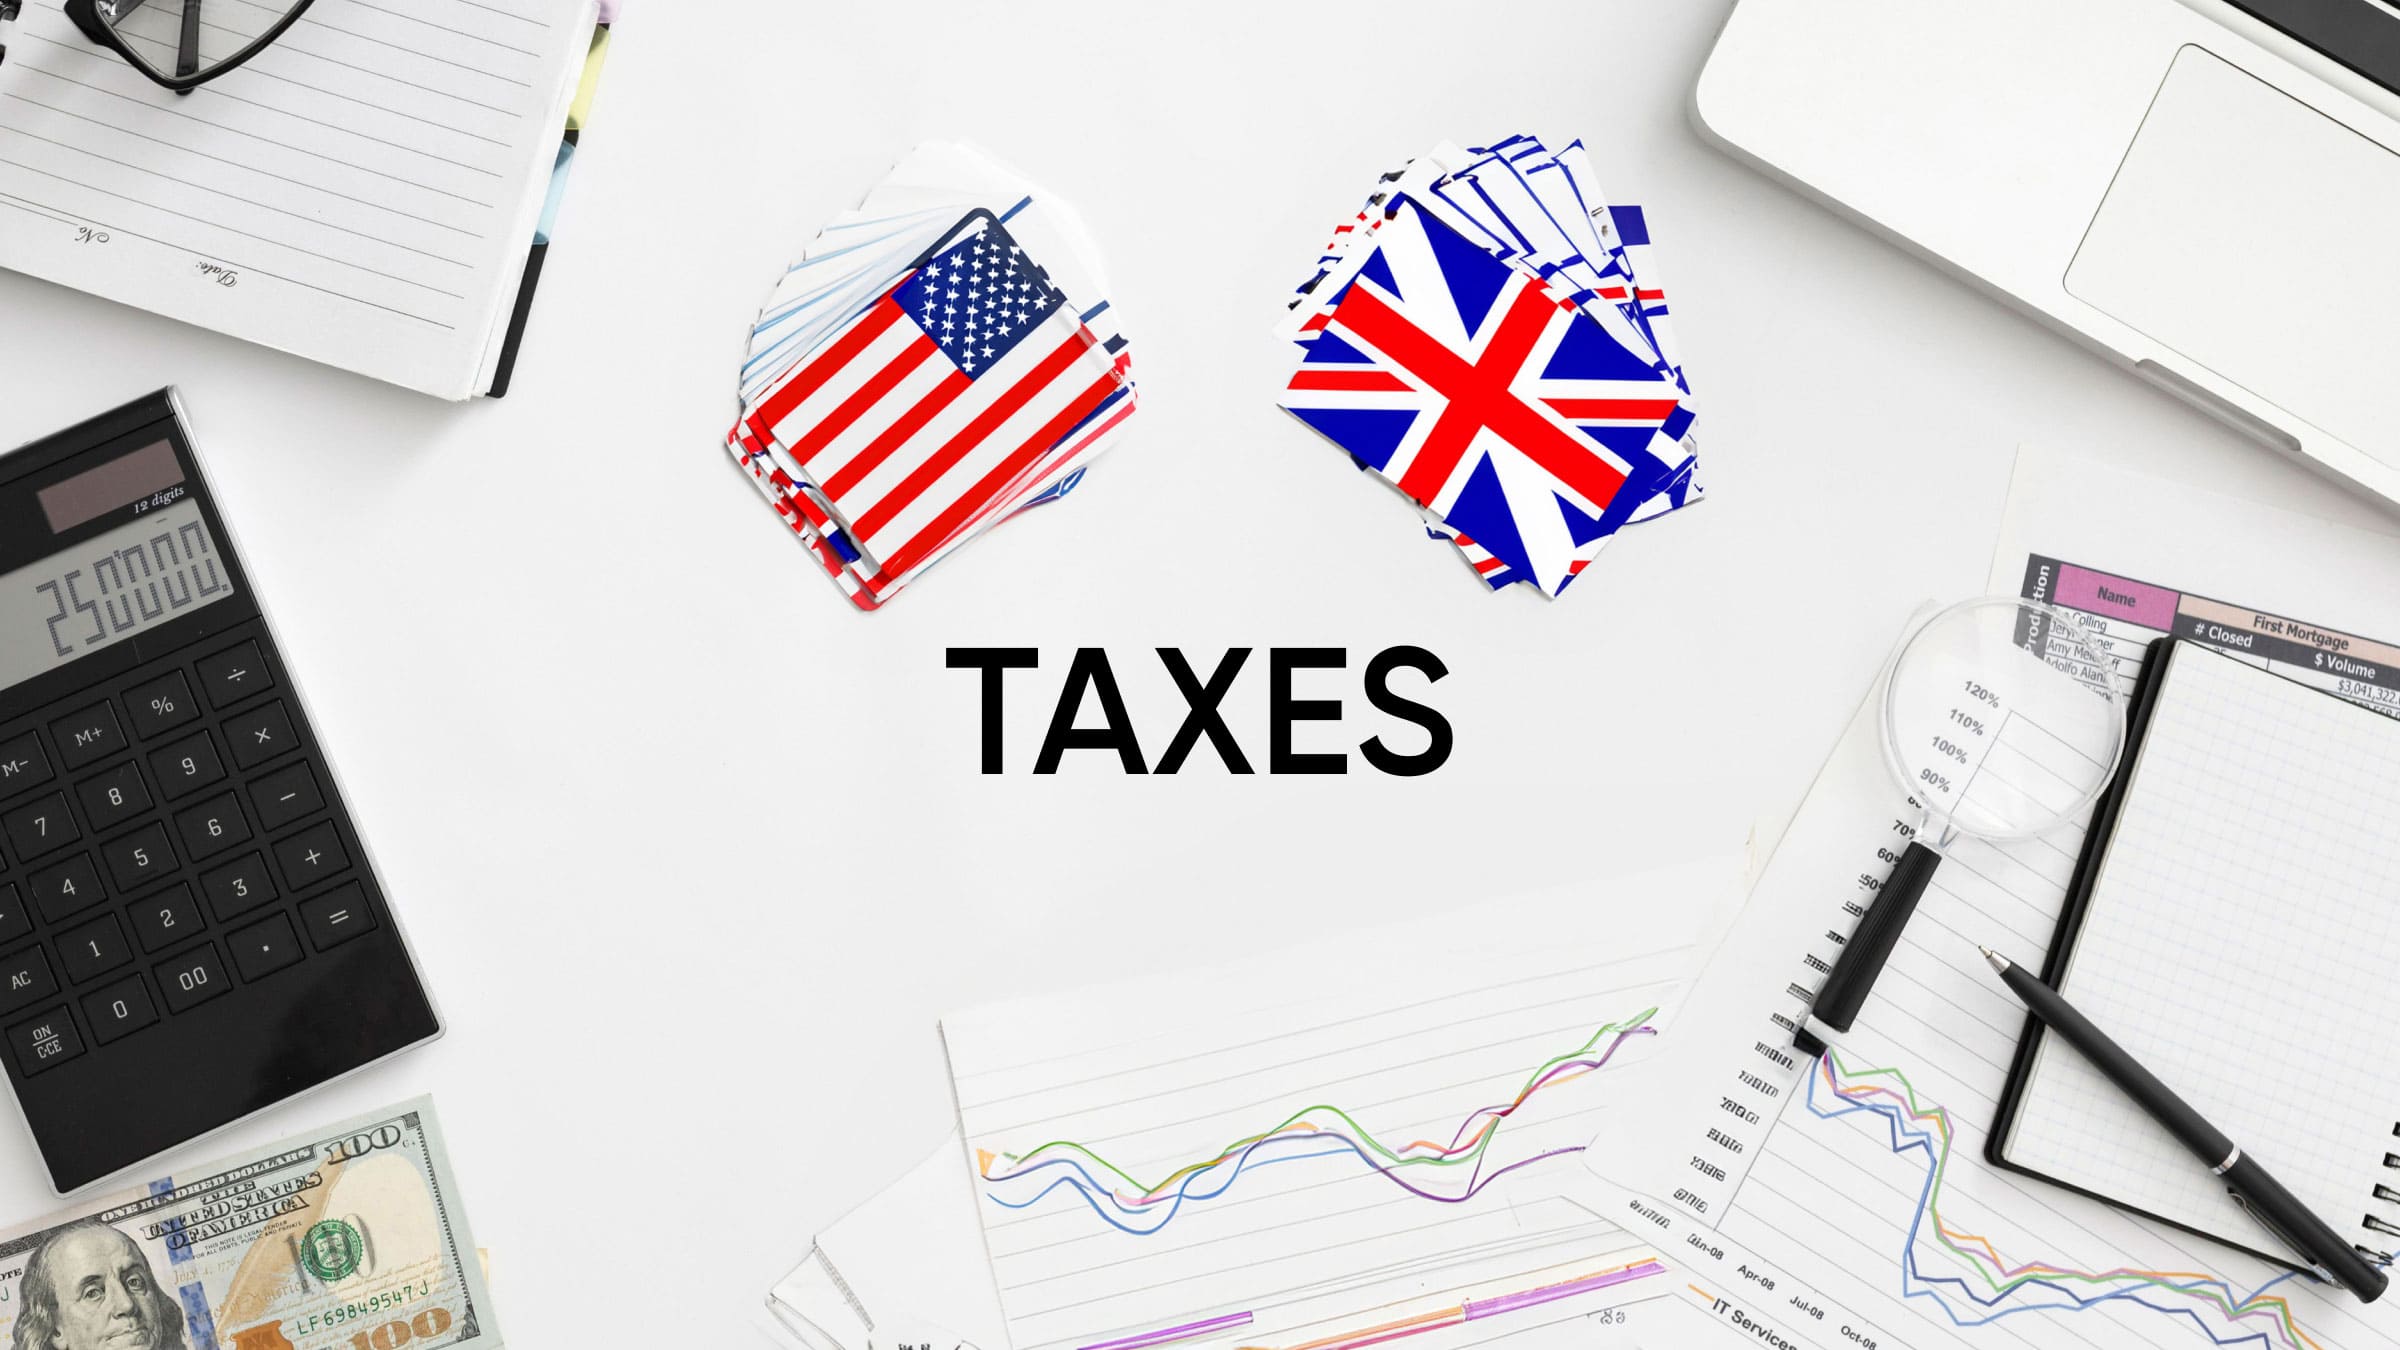 Выбирая форму бизнеса, обратите внимание на размер налогов, которые придется платить